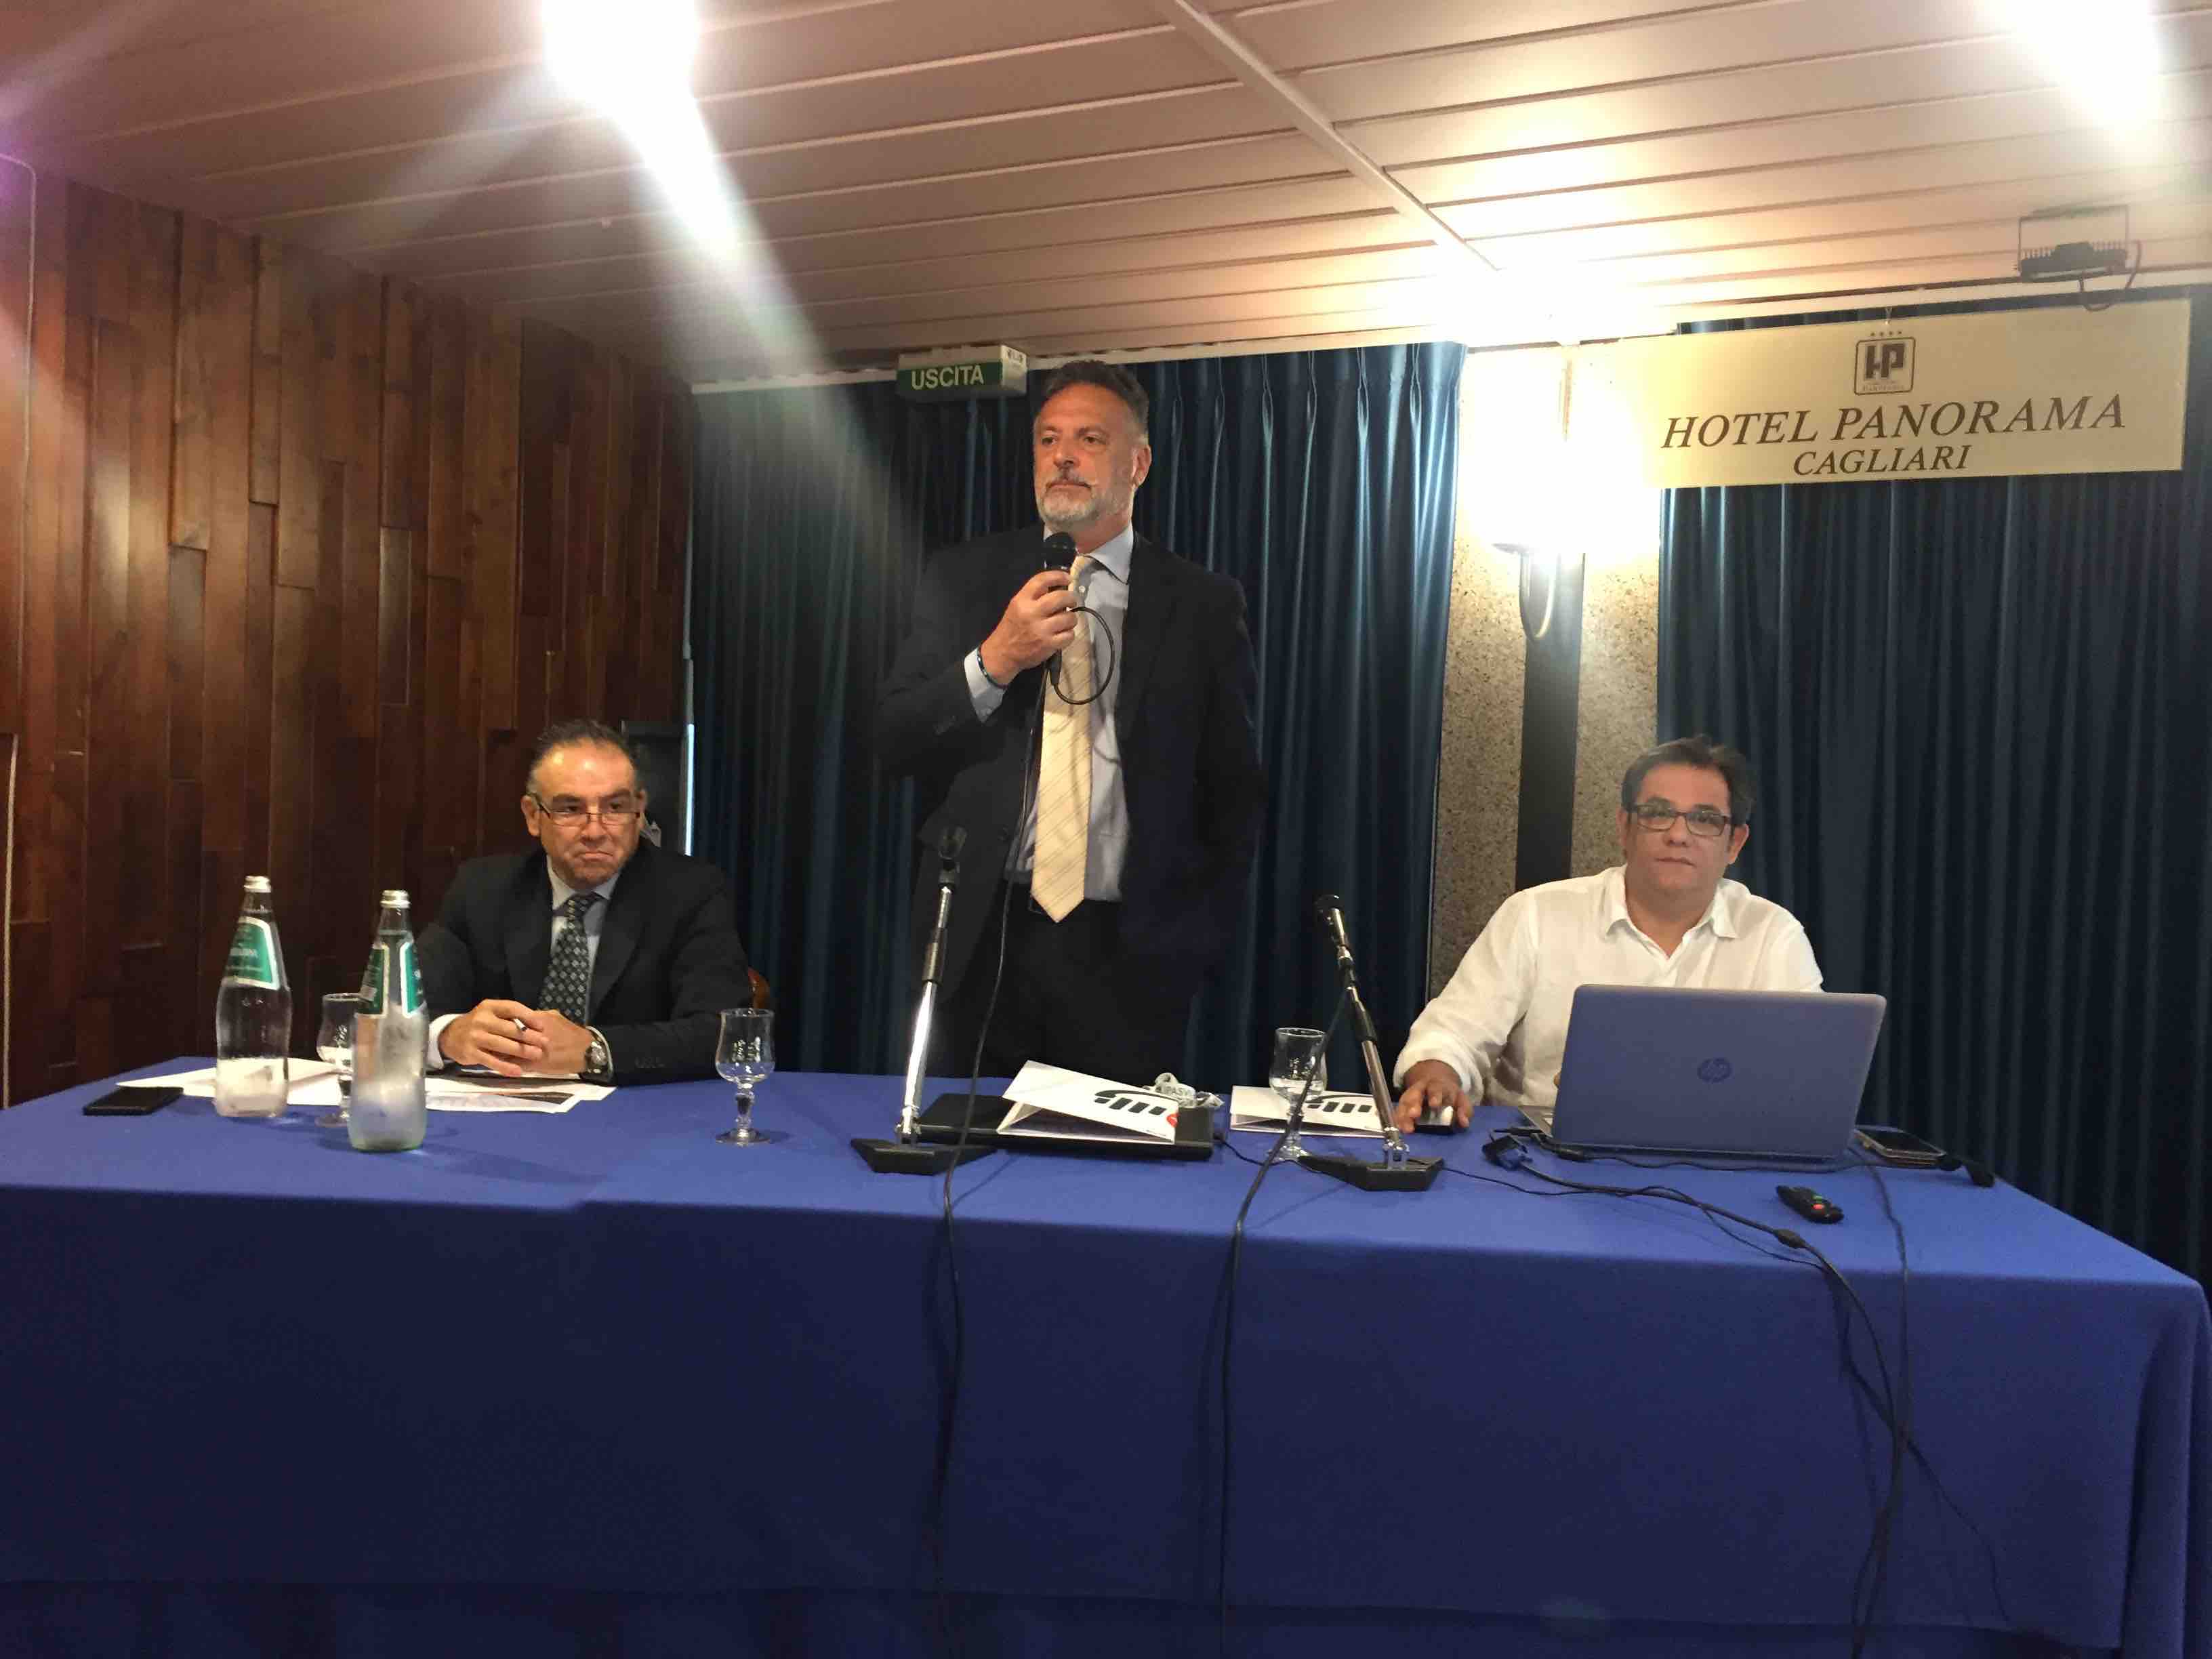 Comunicazione, deontologia e formazione continua: a Cagliari il convegno “Professione Infermiere”